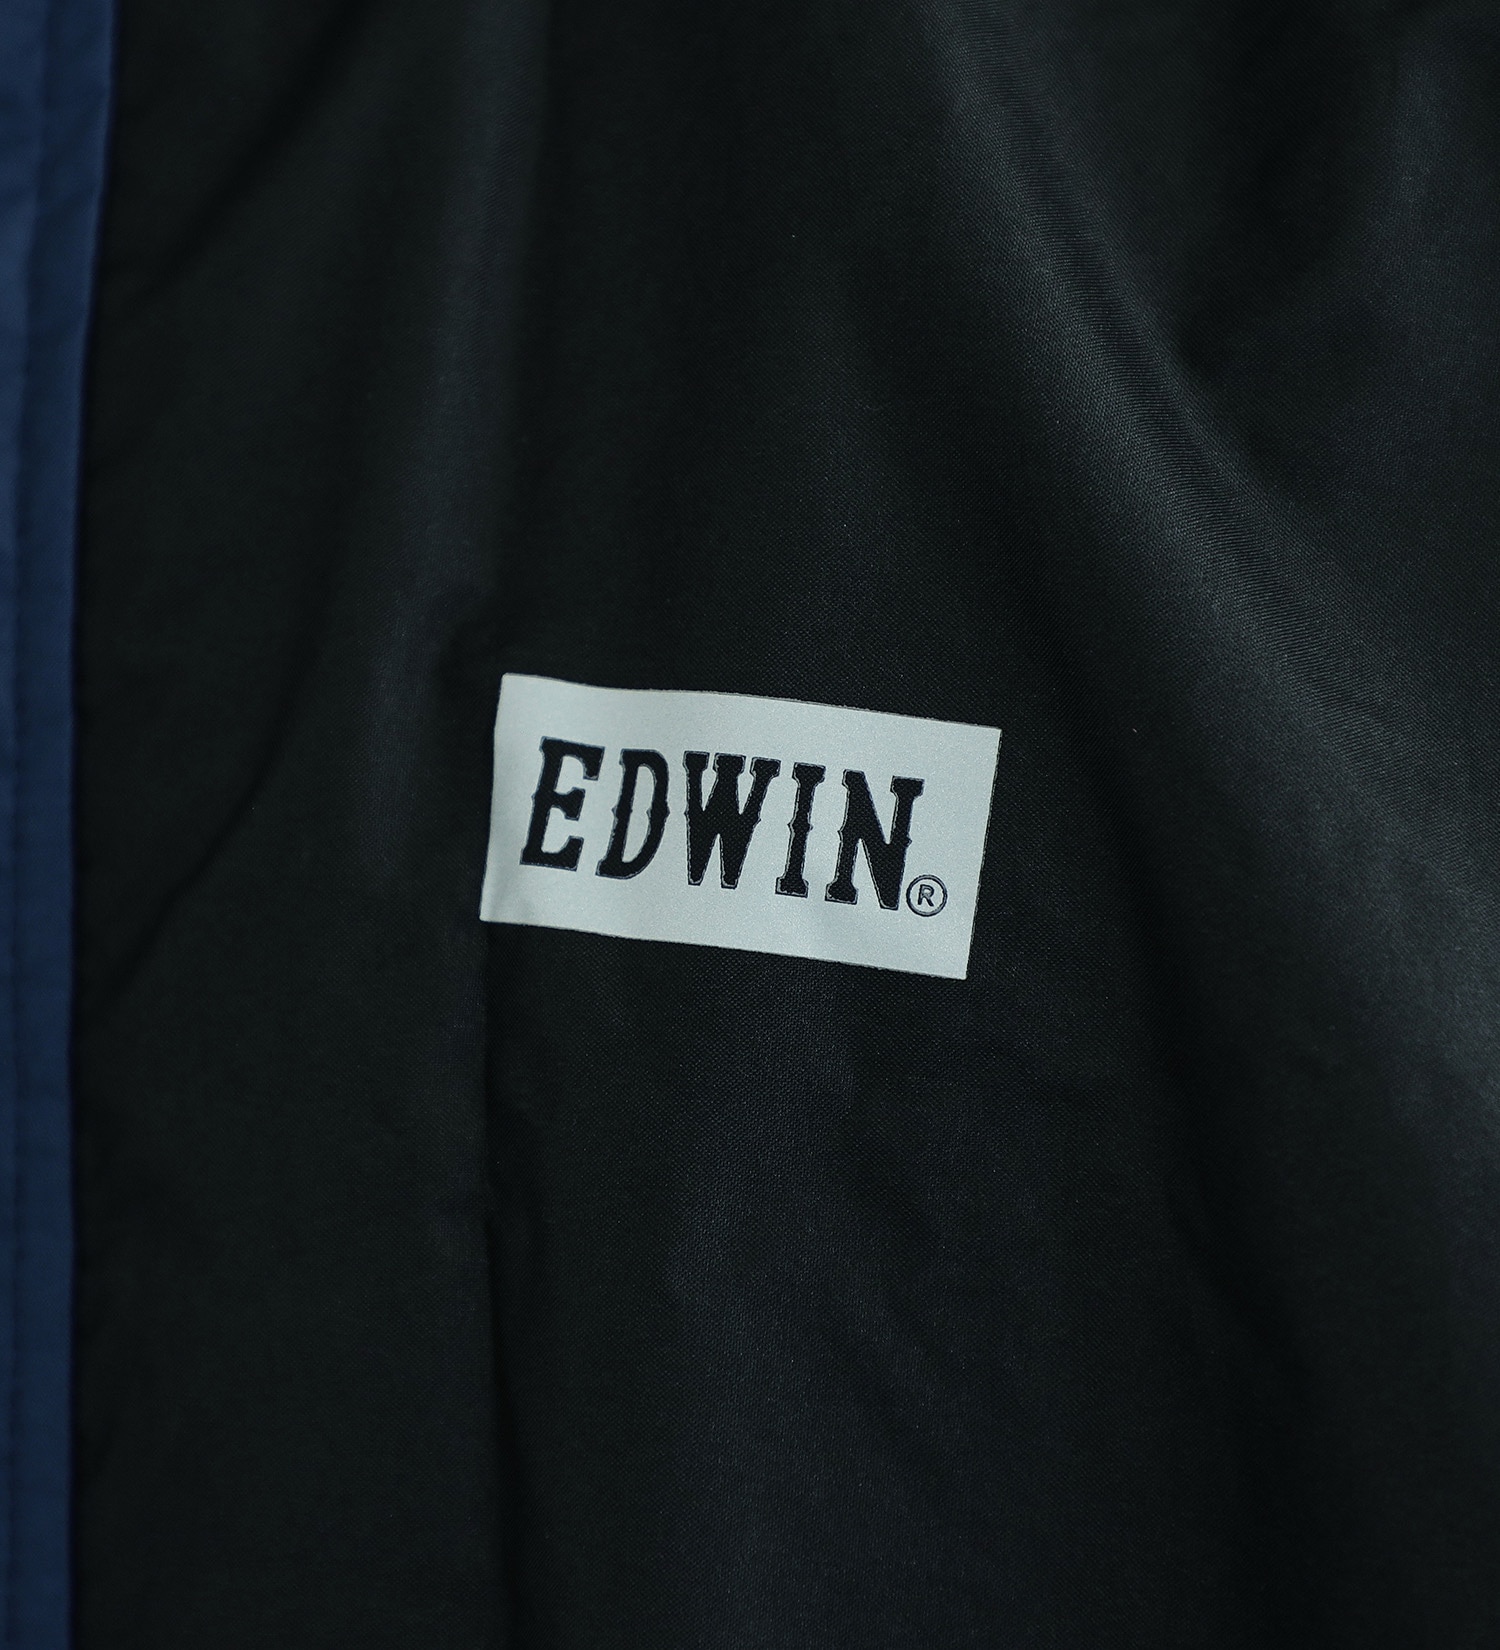 EDWIN(エドウイン)の【GW SALE】EDWIN レインロングコート|ファッション雑貨/レインウェア/ポンチョ/メンズ|ネイビー